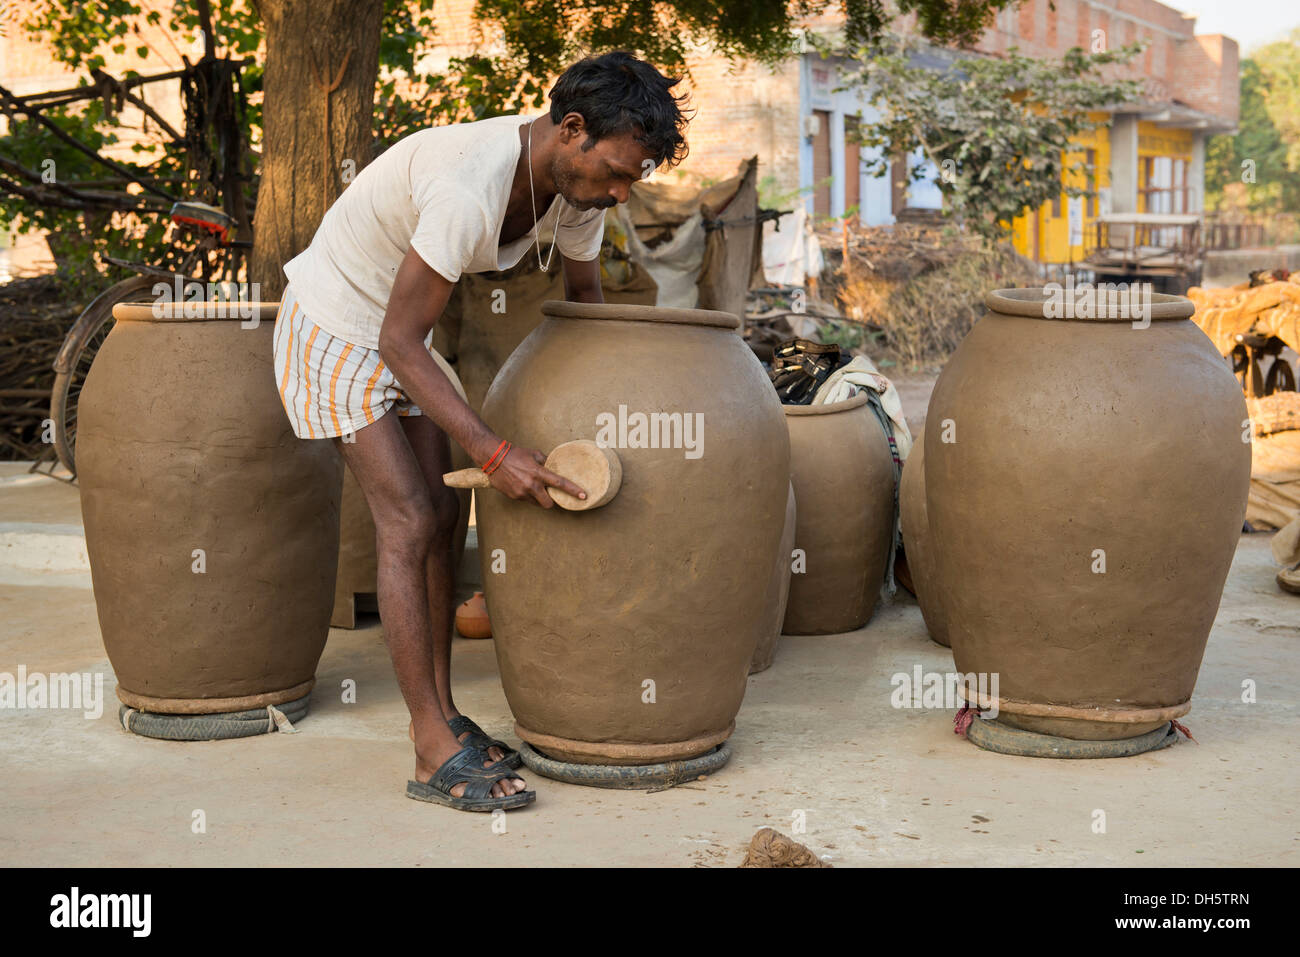 Indian man forming huge clay pots with a wooden tool, Khajuraho, Madhya Pradesh, India Stock Photo